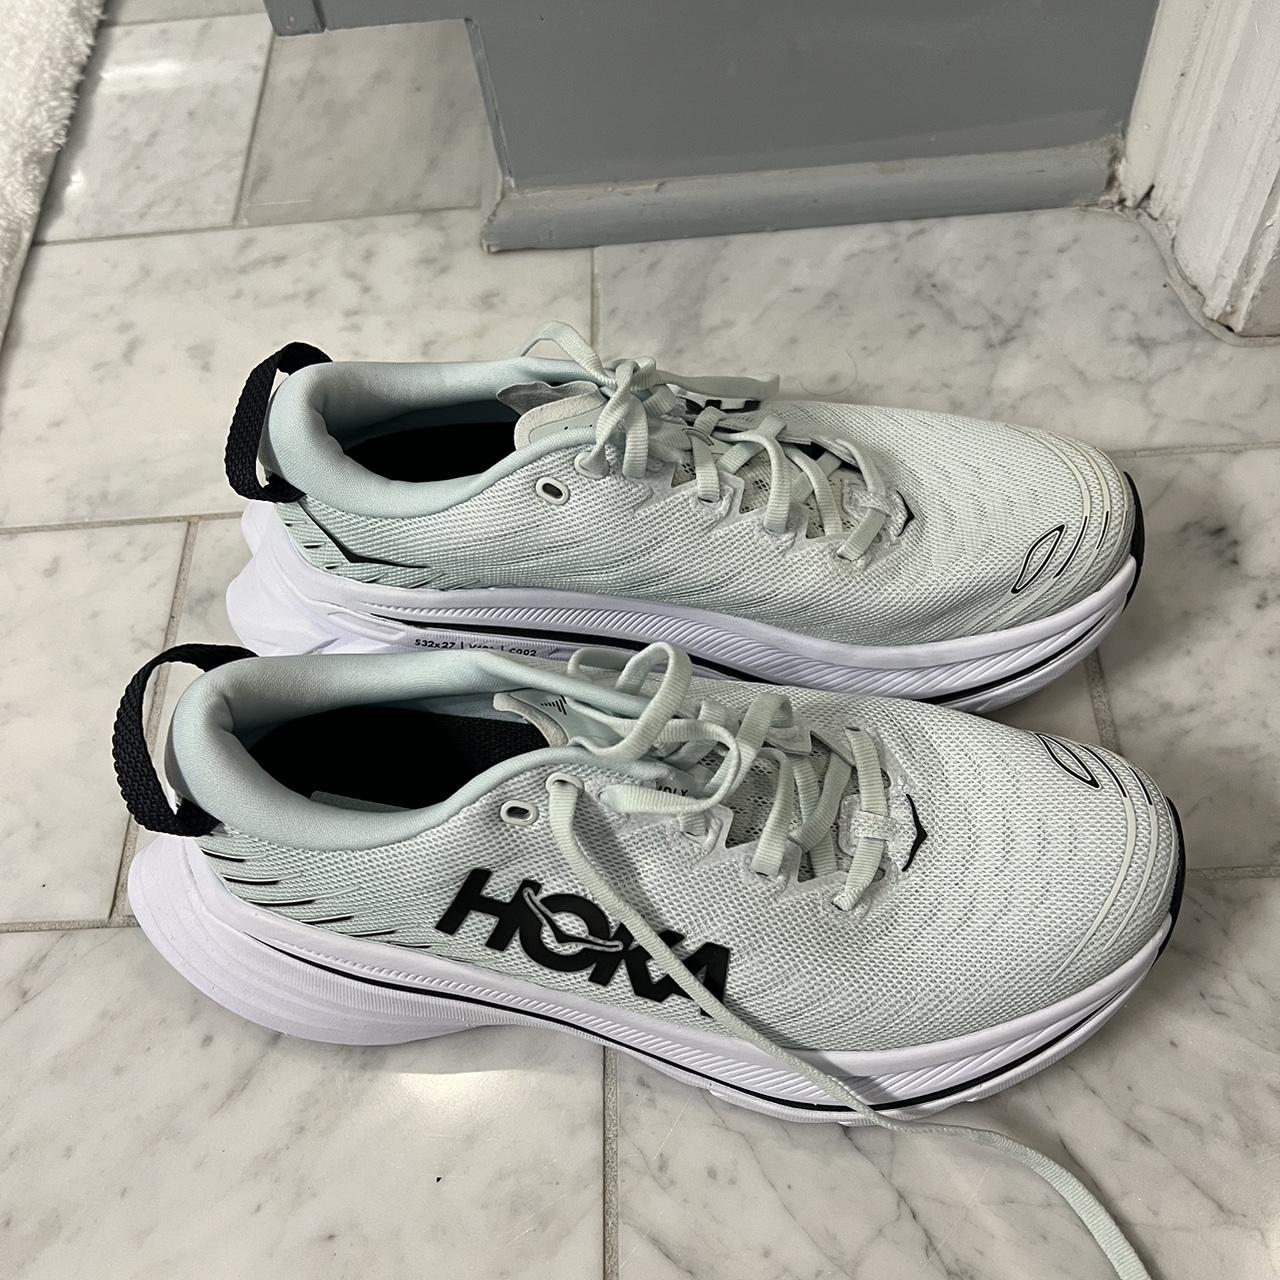 HOKA tennis shoes size 7. Never worn originally $180 - Depop